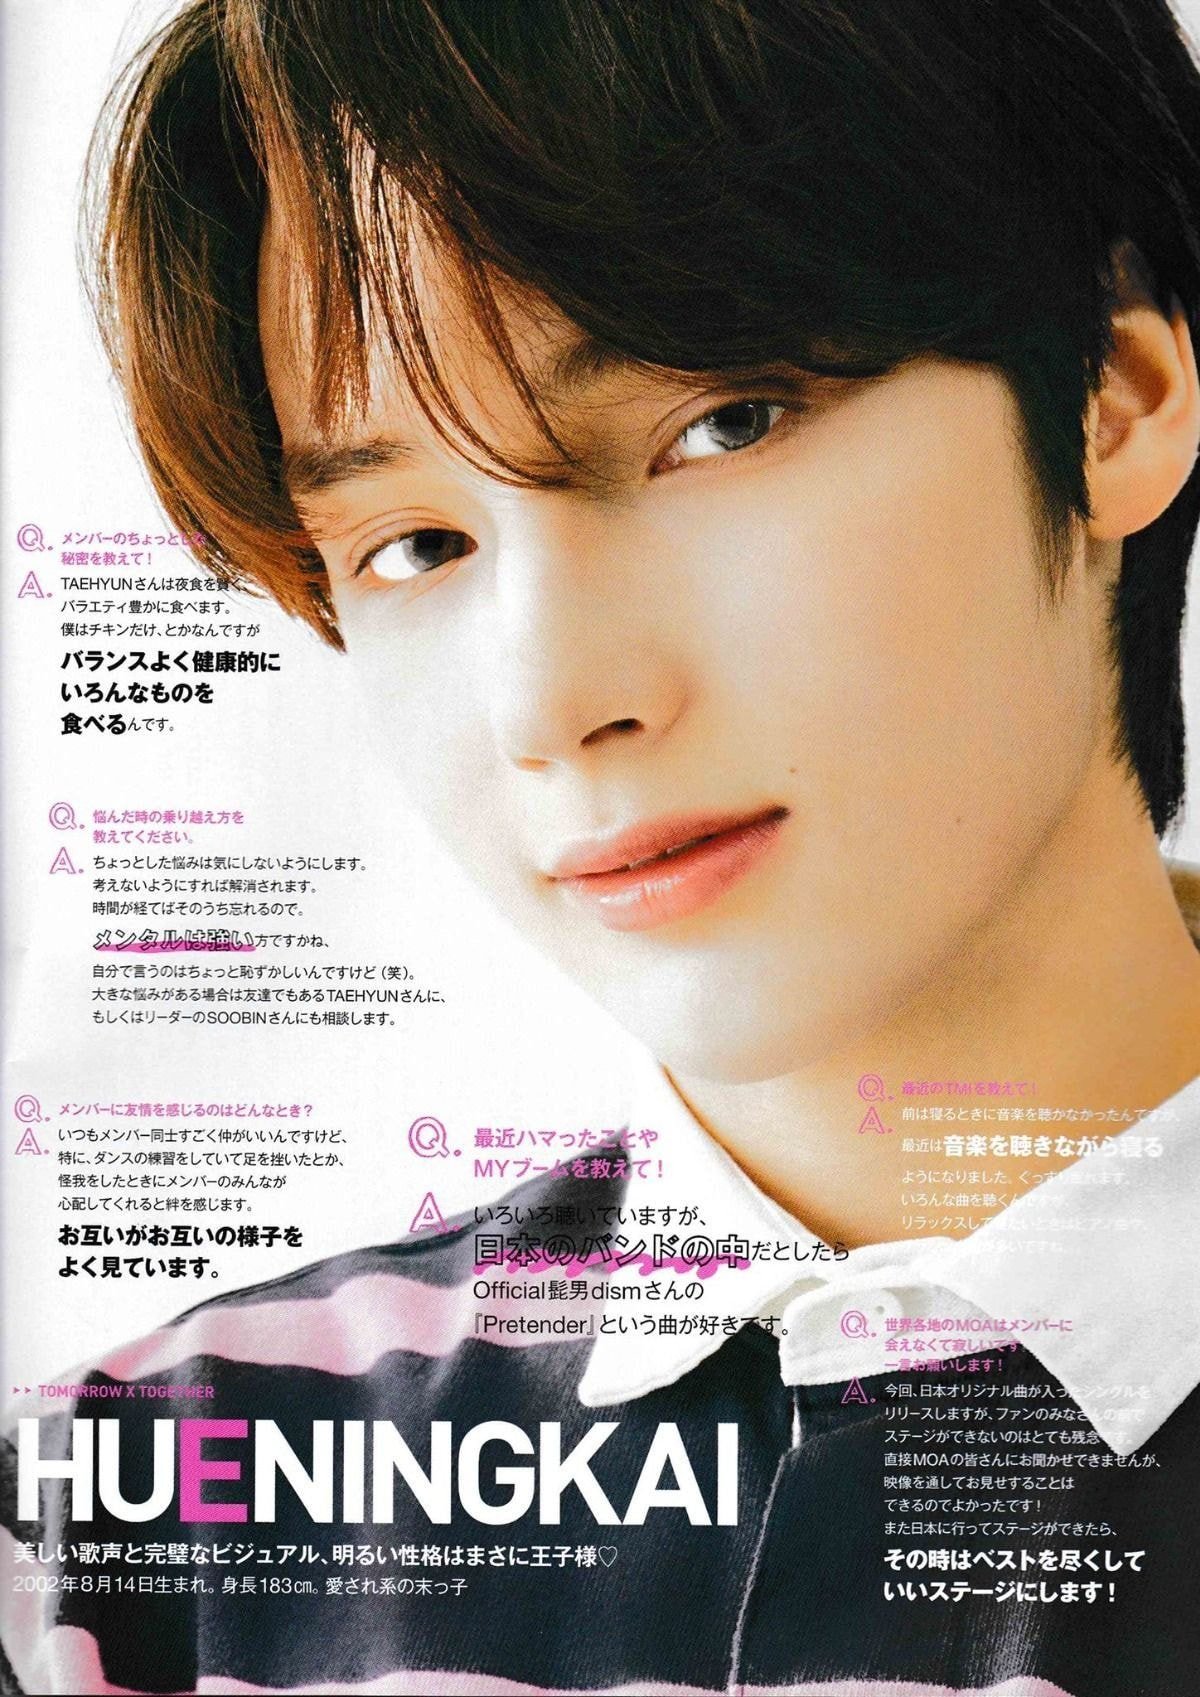 일본잡지 JJ 10월호에 소개된 투모로우바이투게더